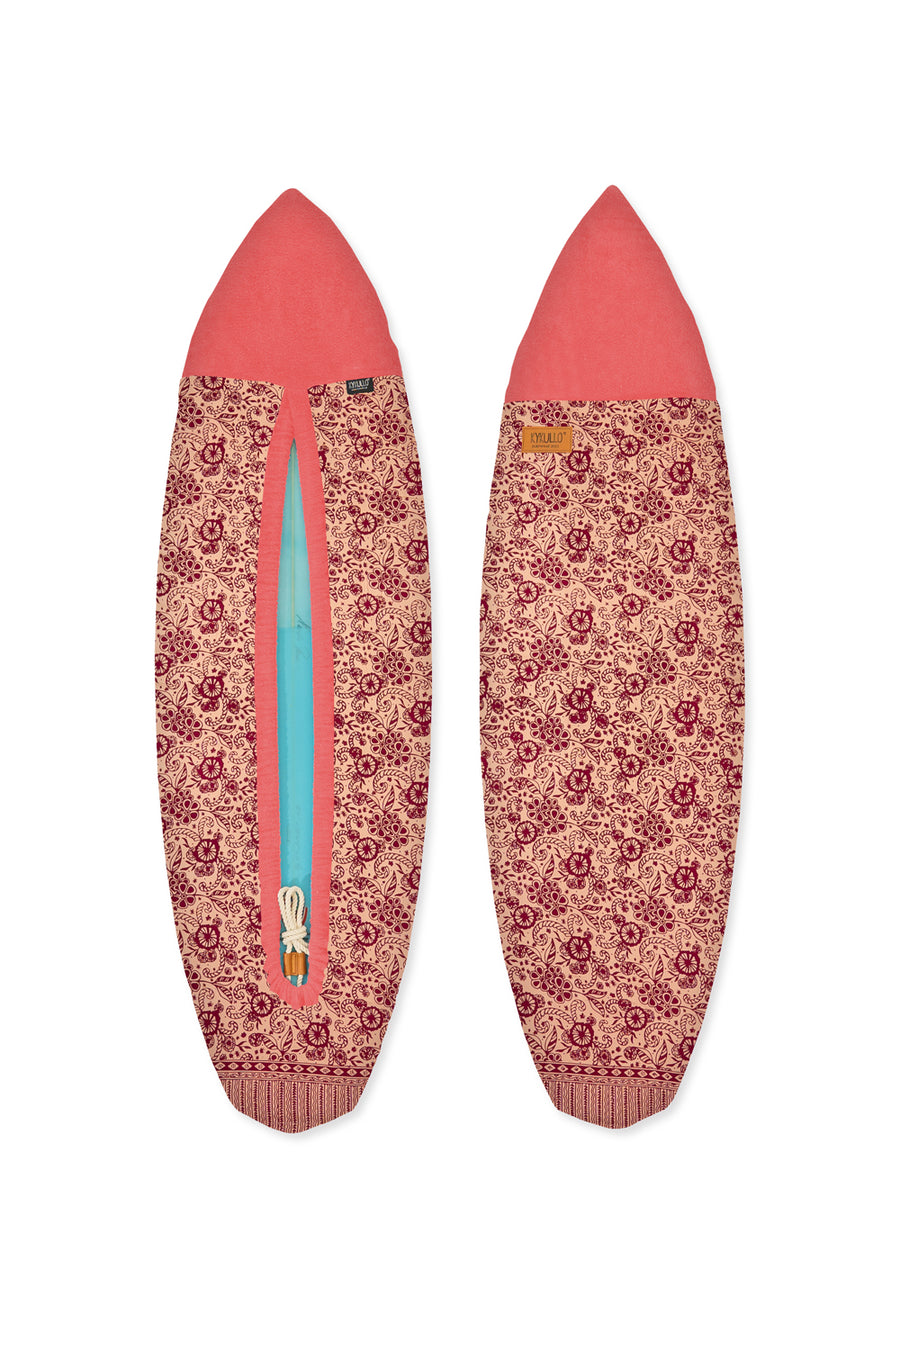 SURFWRAP 5'10 - PEACH (RETAIL)